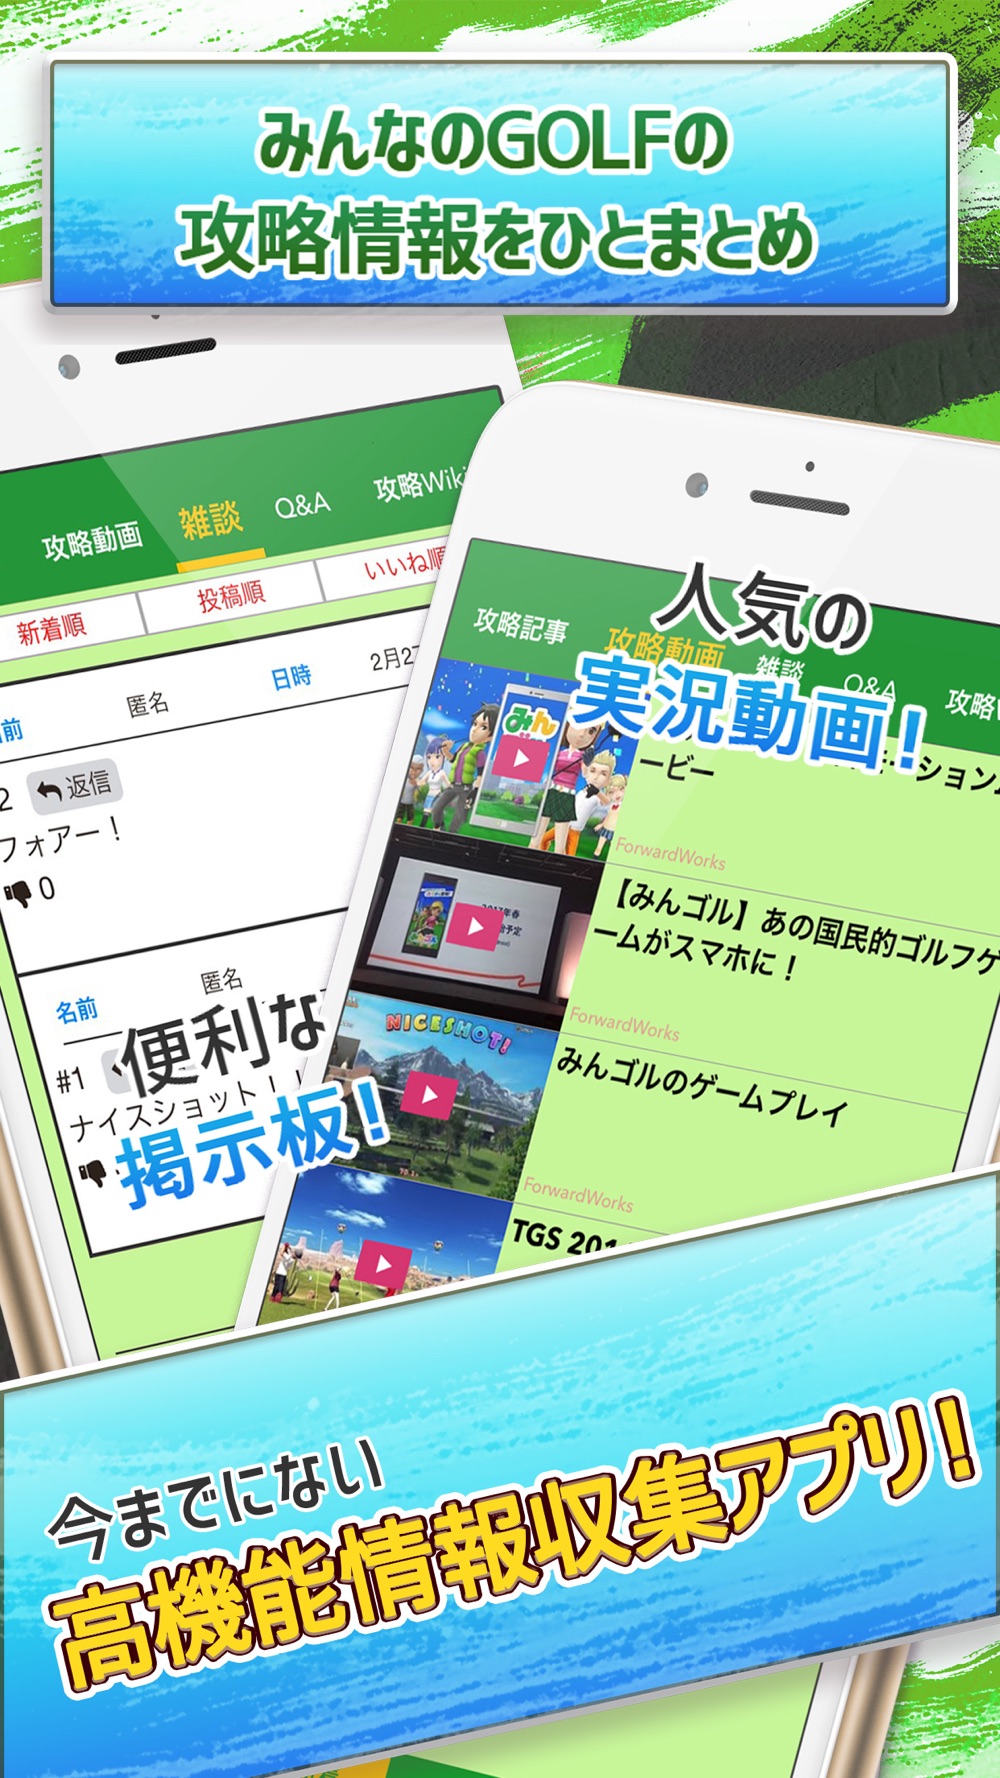 みんゴル 攻略ニュースオンライン掲示板 For みんゴル スマホアプリ版 Free Download App For Iphone Steprimo Com